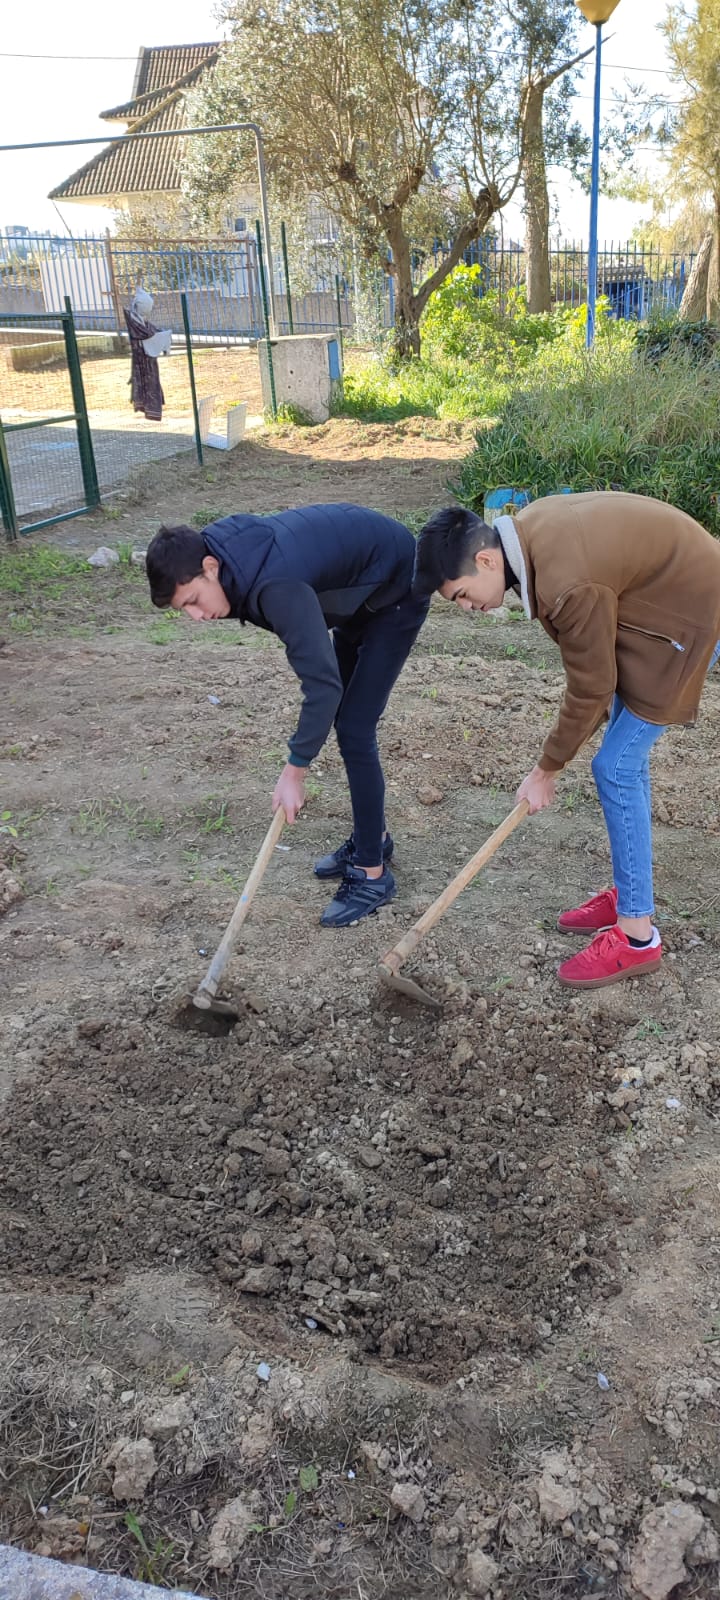 2- Preparação da terra para o cultivo: os alunos cavam a terra para que fique mais macia e adicionam fertilizante biológico.